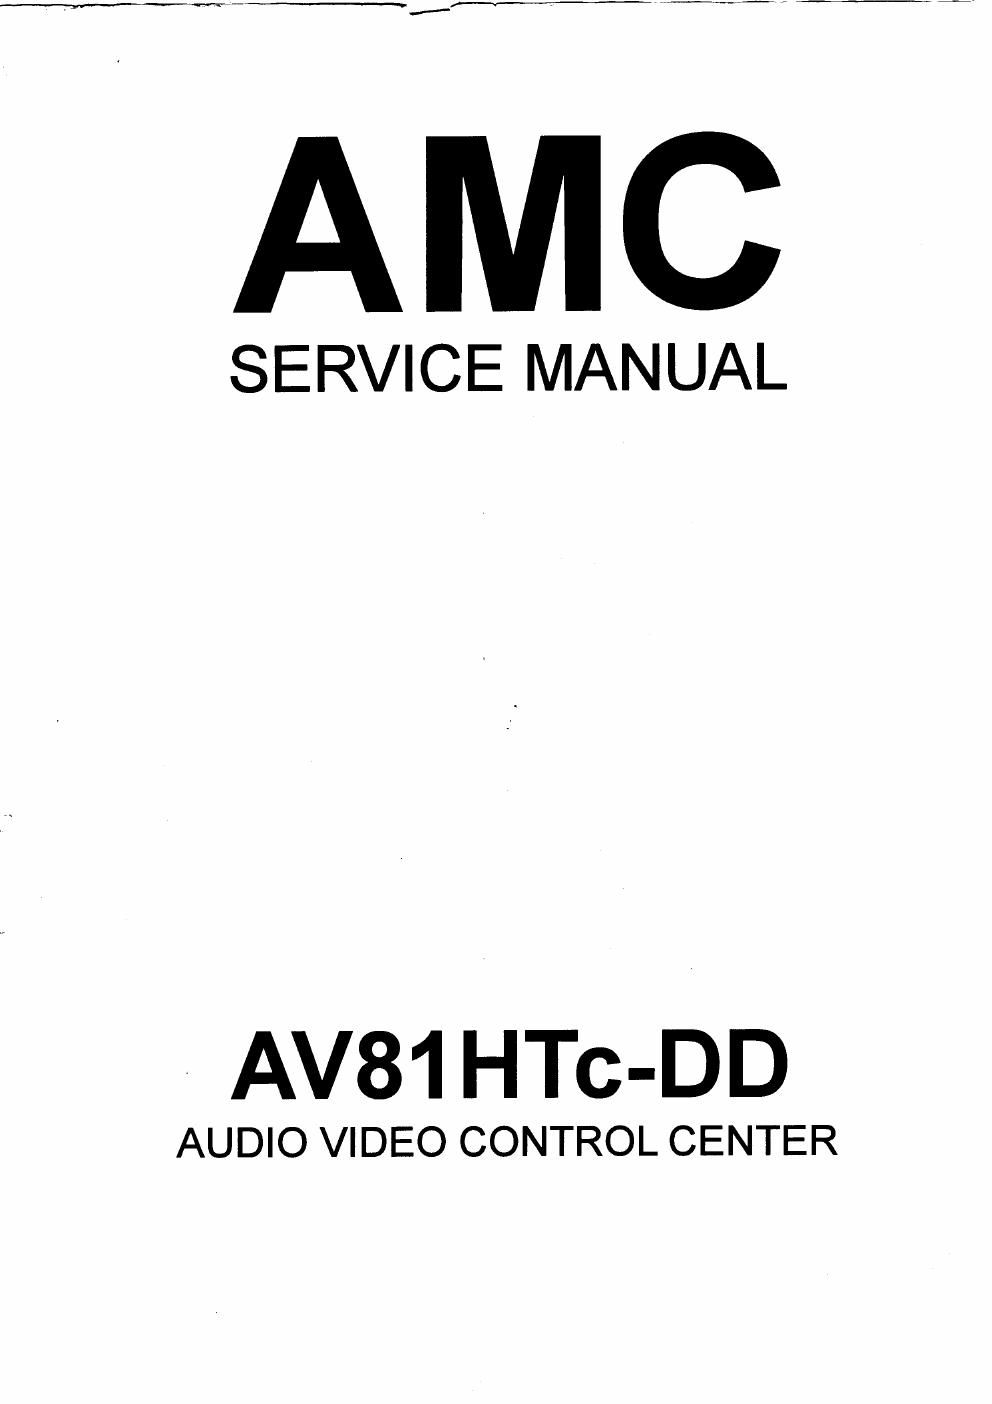 Amc AV 81HTCDD avc service manual